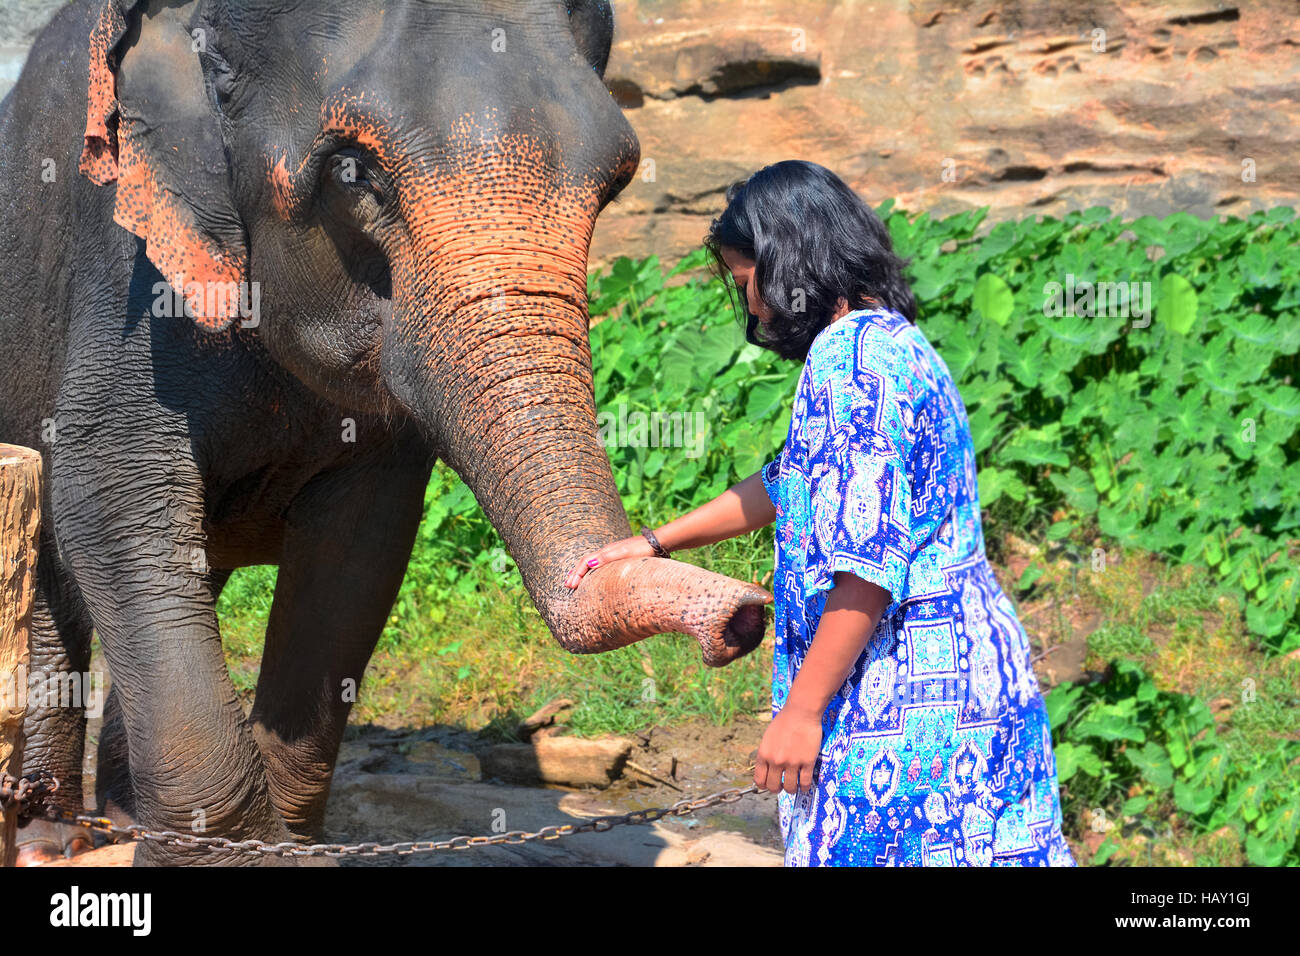 A Visitor to Pinnawala elephant orphanage is feeding an elephant Stock Photo